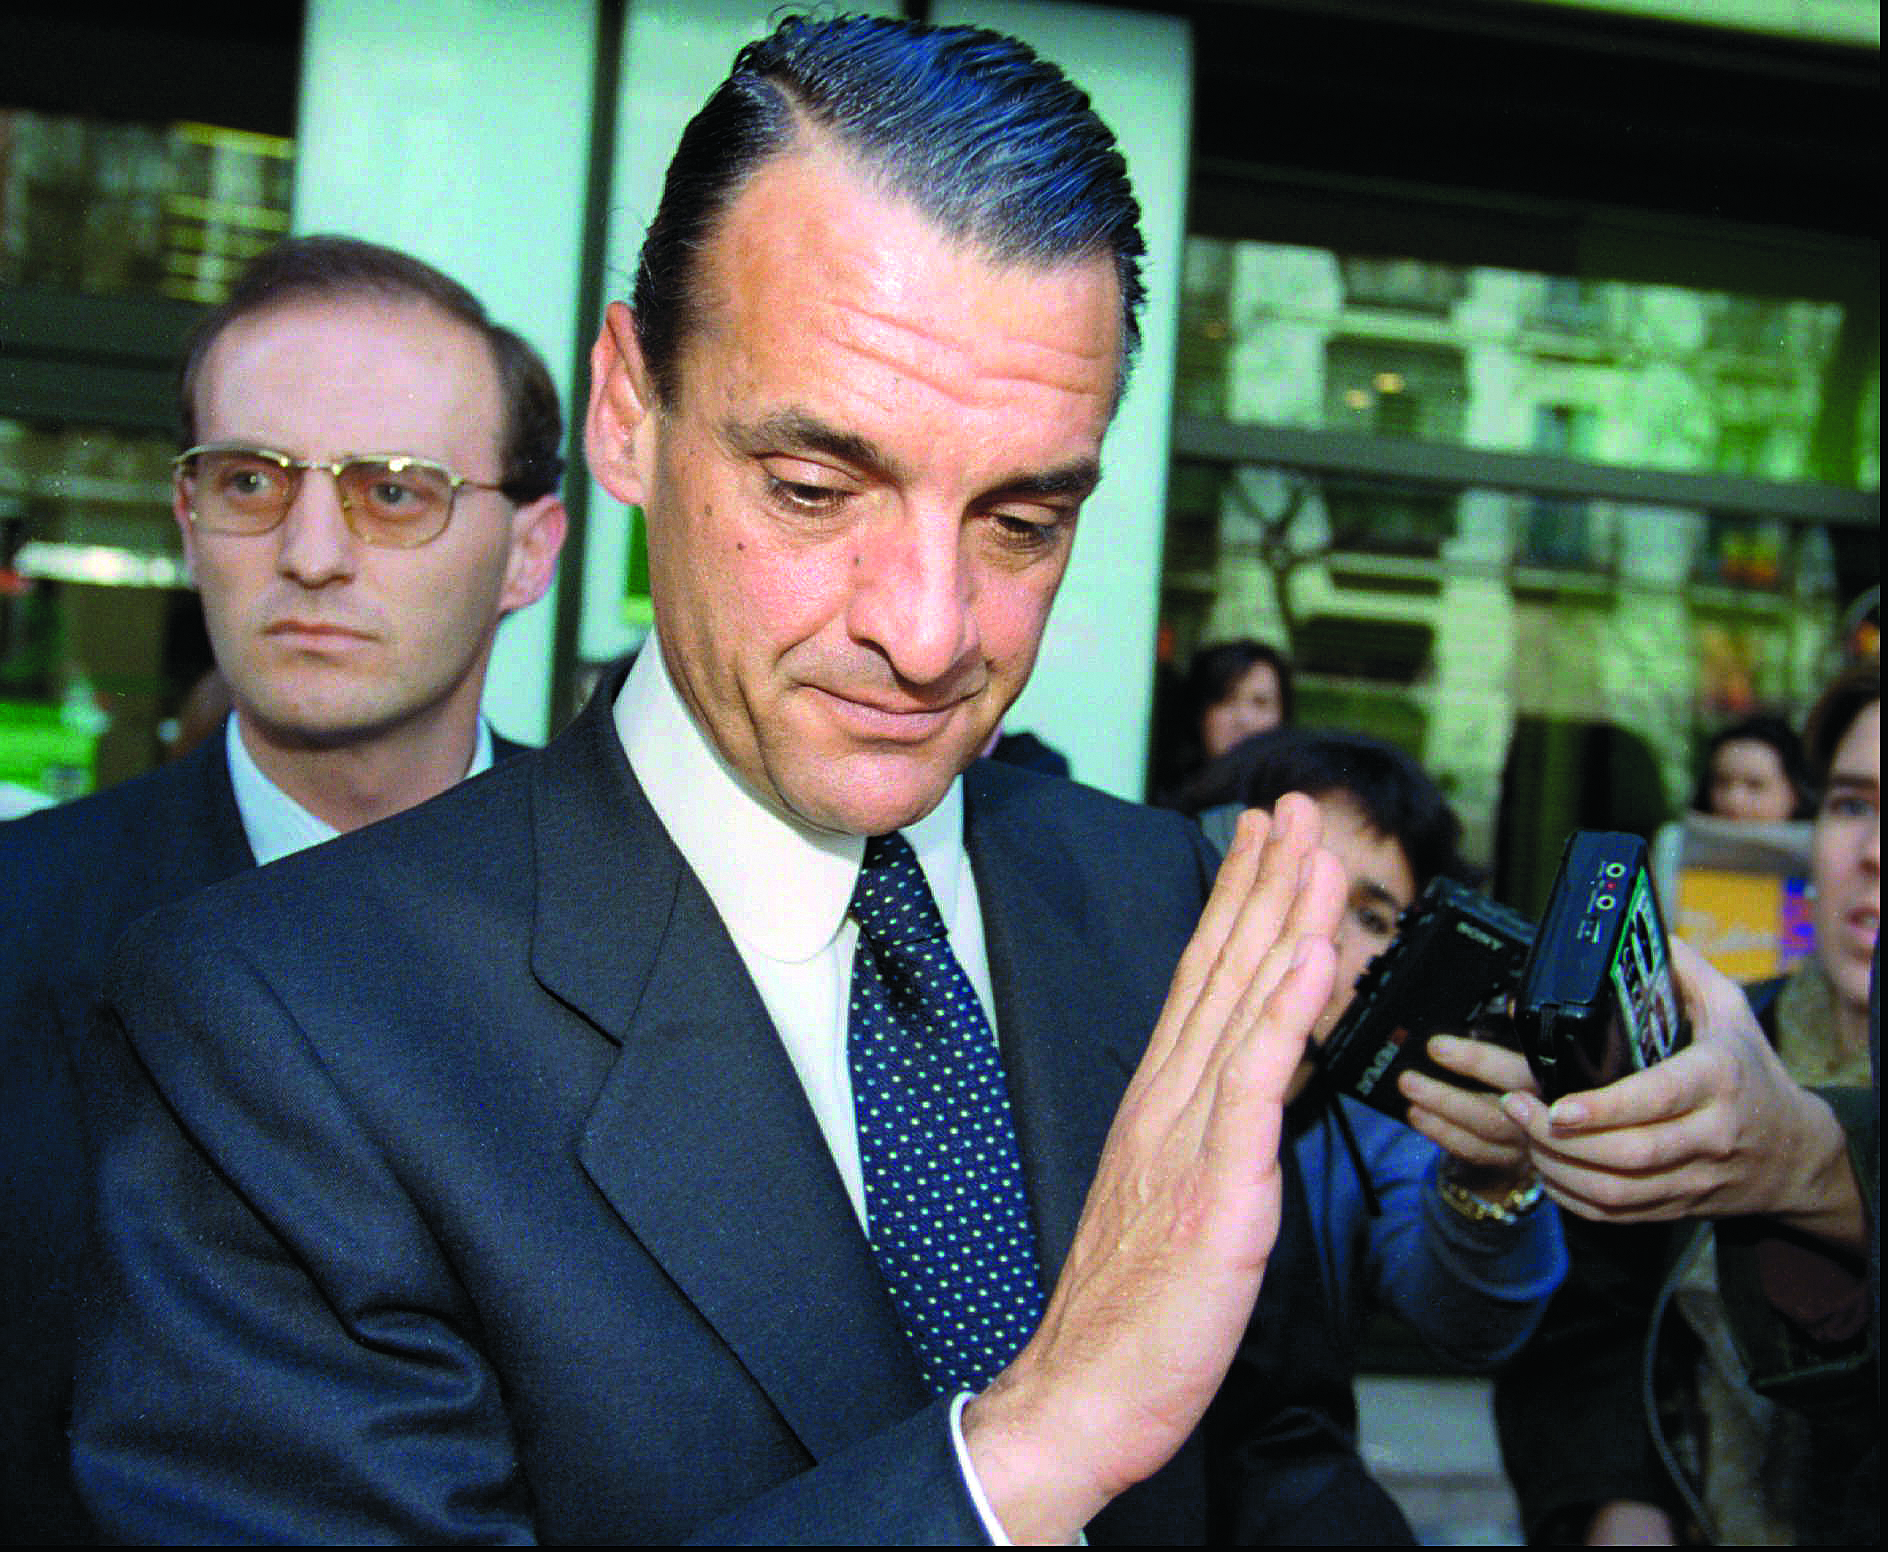 Mario Conde. Ex-banqueiro detido em Espanha esteve envolvido em escândalo com José Roquette